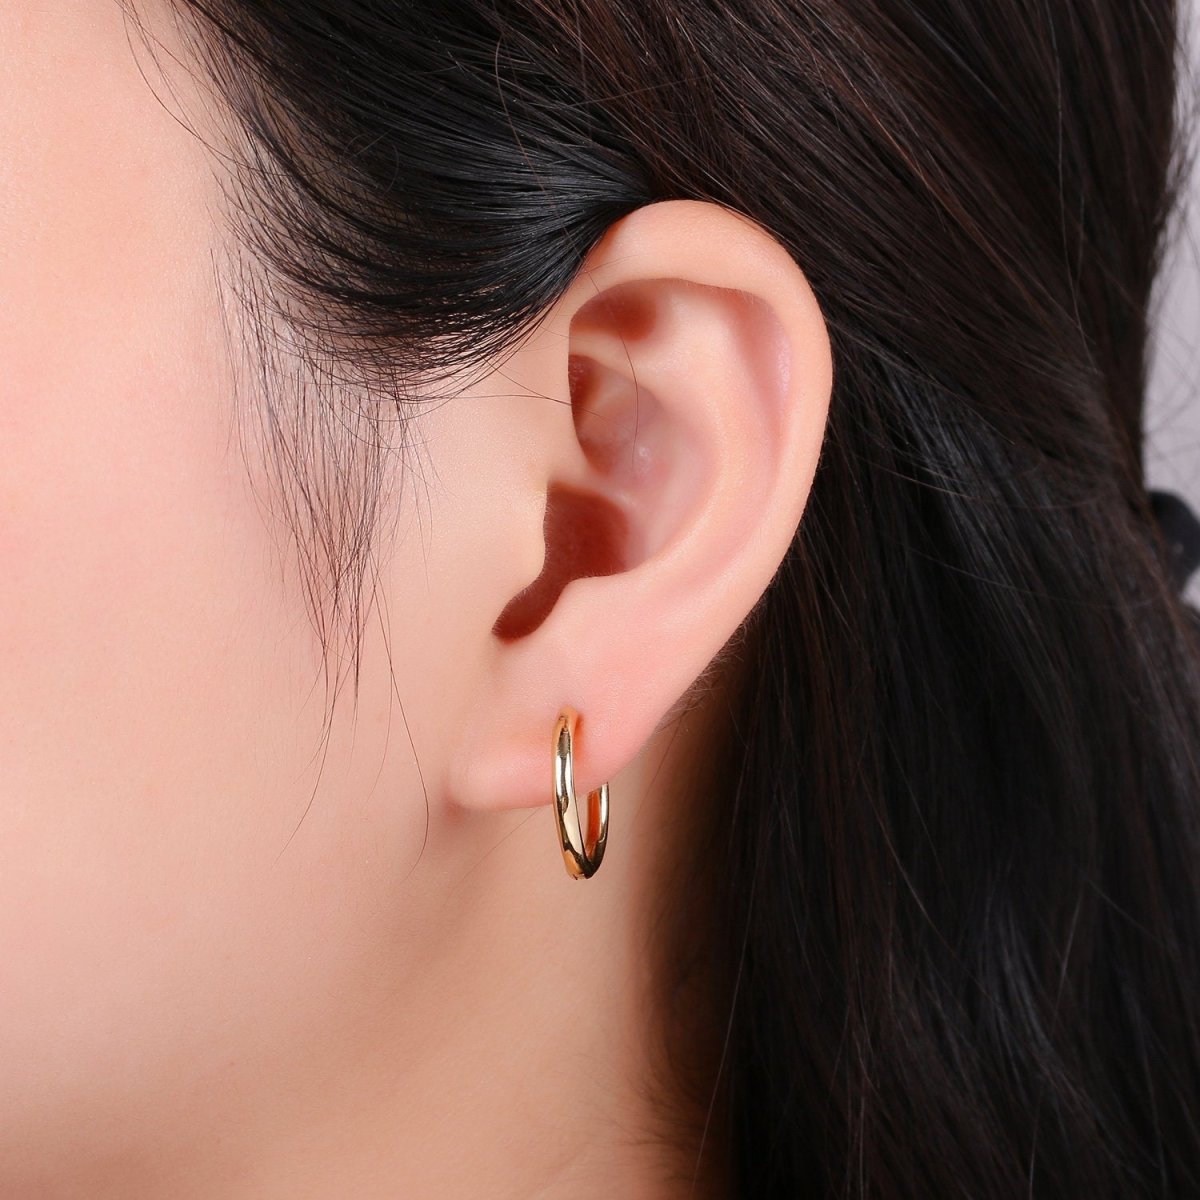 Mini Round hoop earrings, 18mm, 14K gold plated brass, Nickel free, Earrings making, Simple Round hoop 1 pair 18mm hoops - DLUXCA